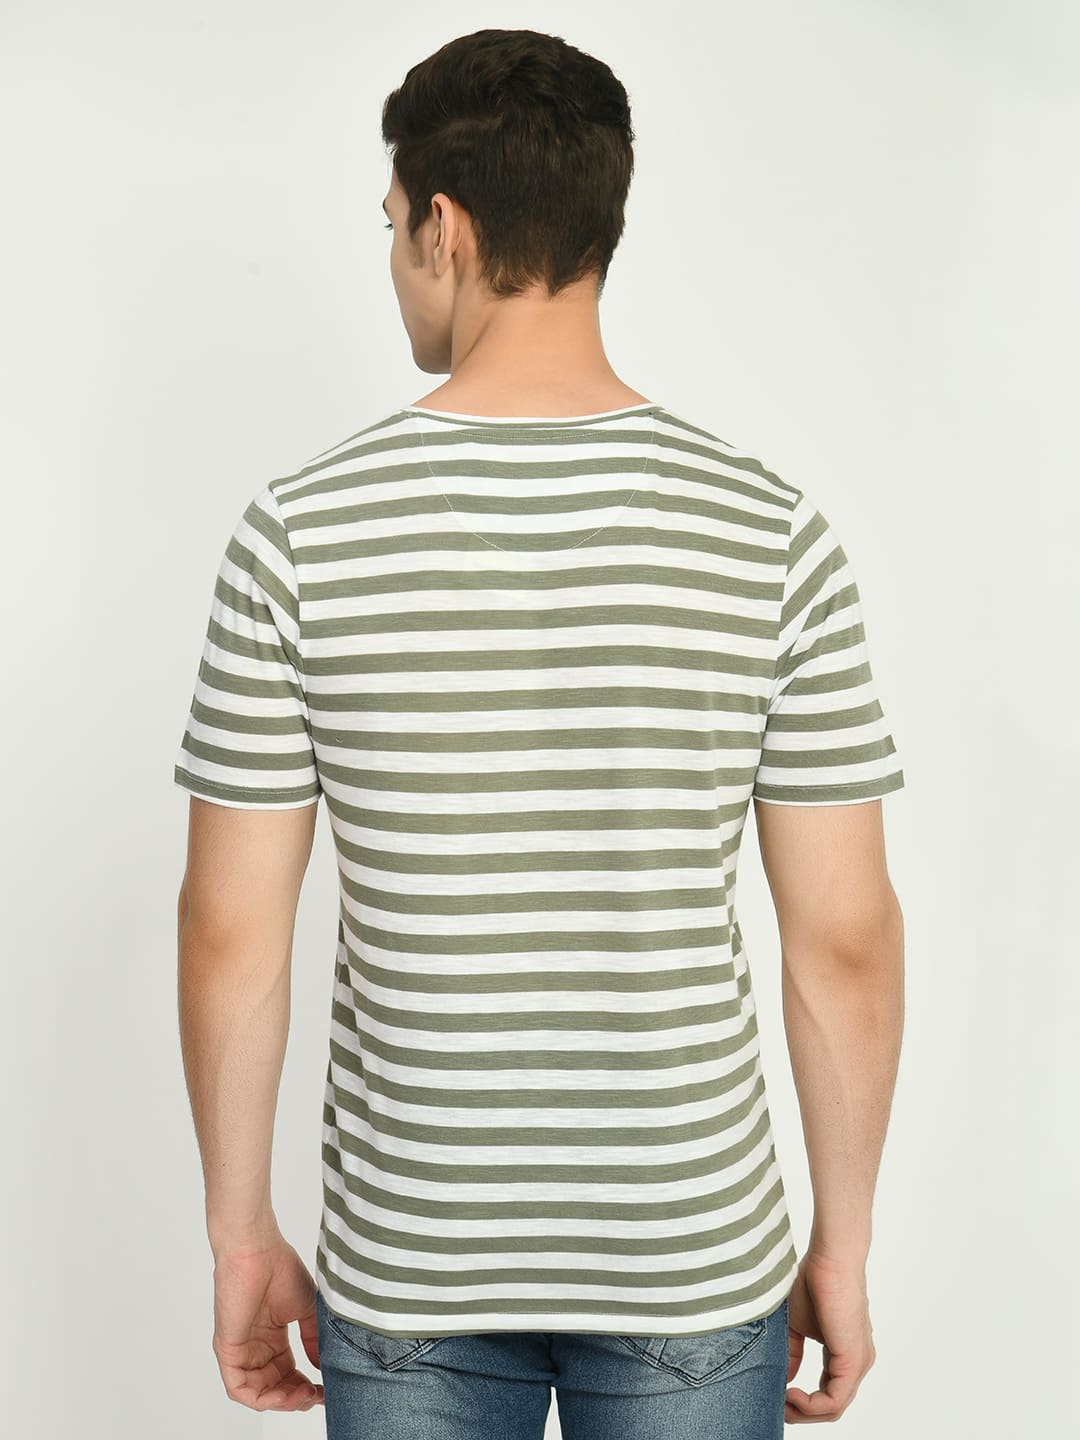 Men's Olive White Striped T-Shirt